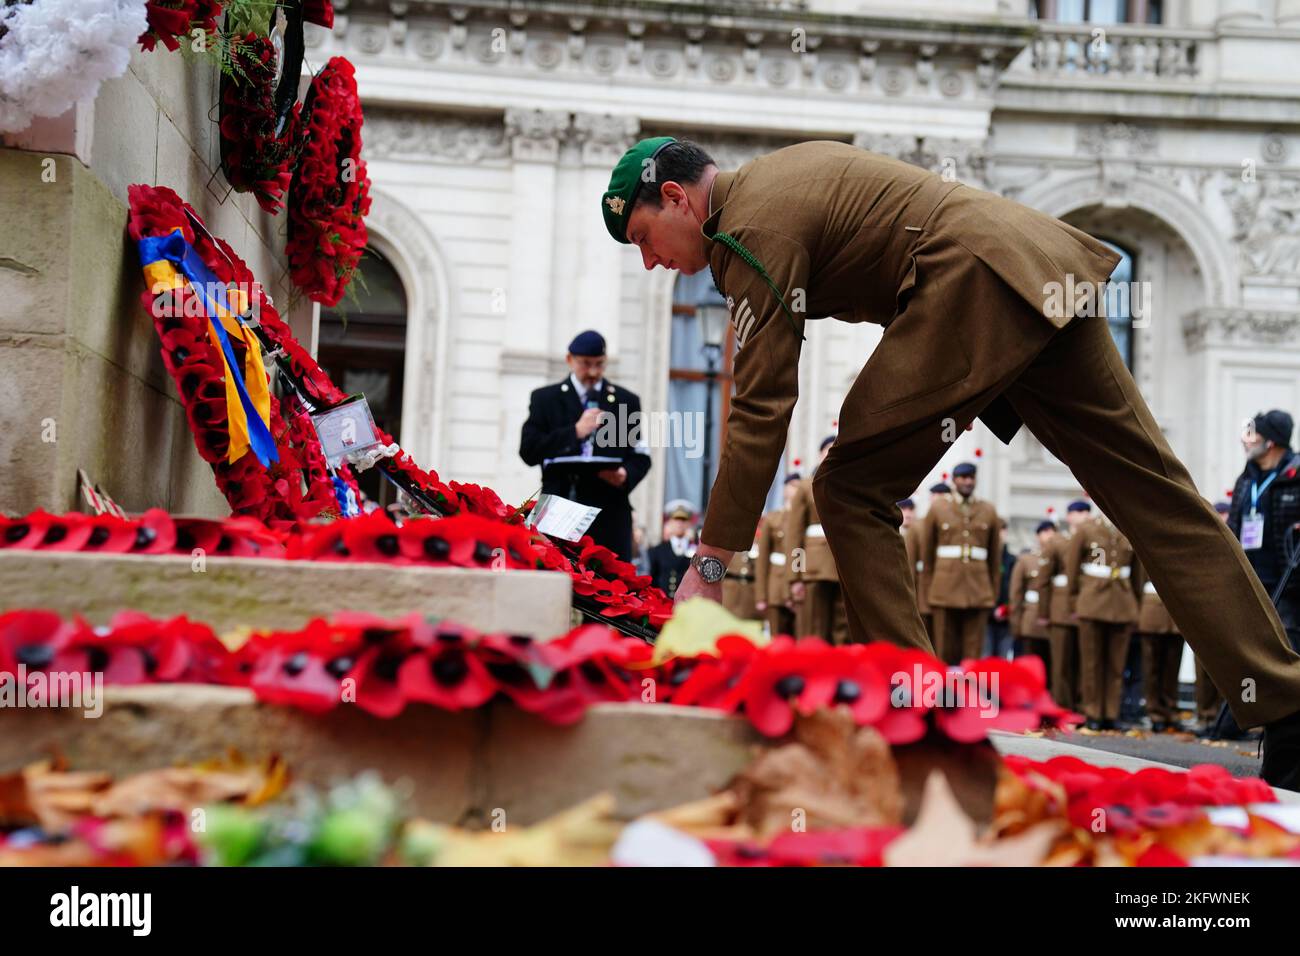 Während der jährlichen Parade der Vereinigung jüdischer Ex-Soldaten und Frauen im Cenotaph in Whitehall, London, wird ein Kranz niedergelegt. Bilddatum: Sonntag, 20. November 2022. Stockfoto